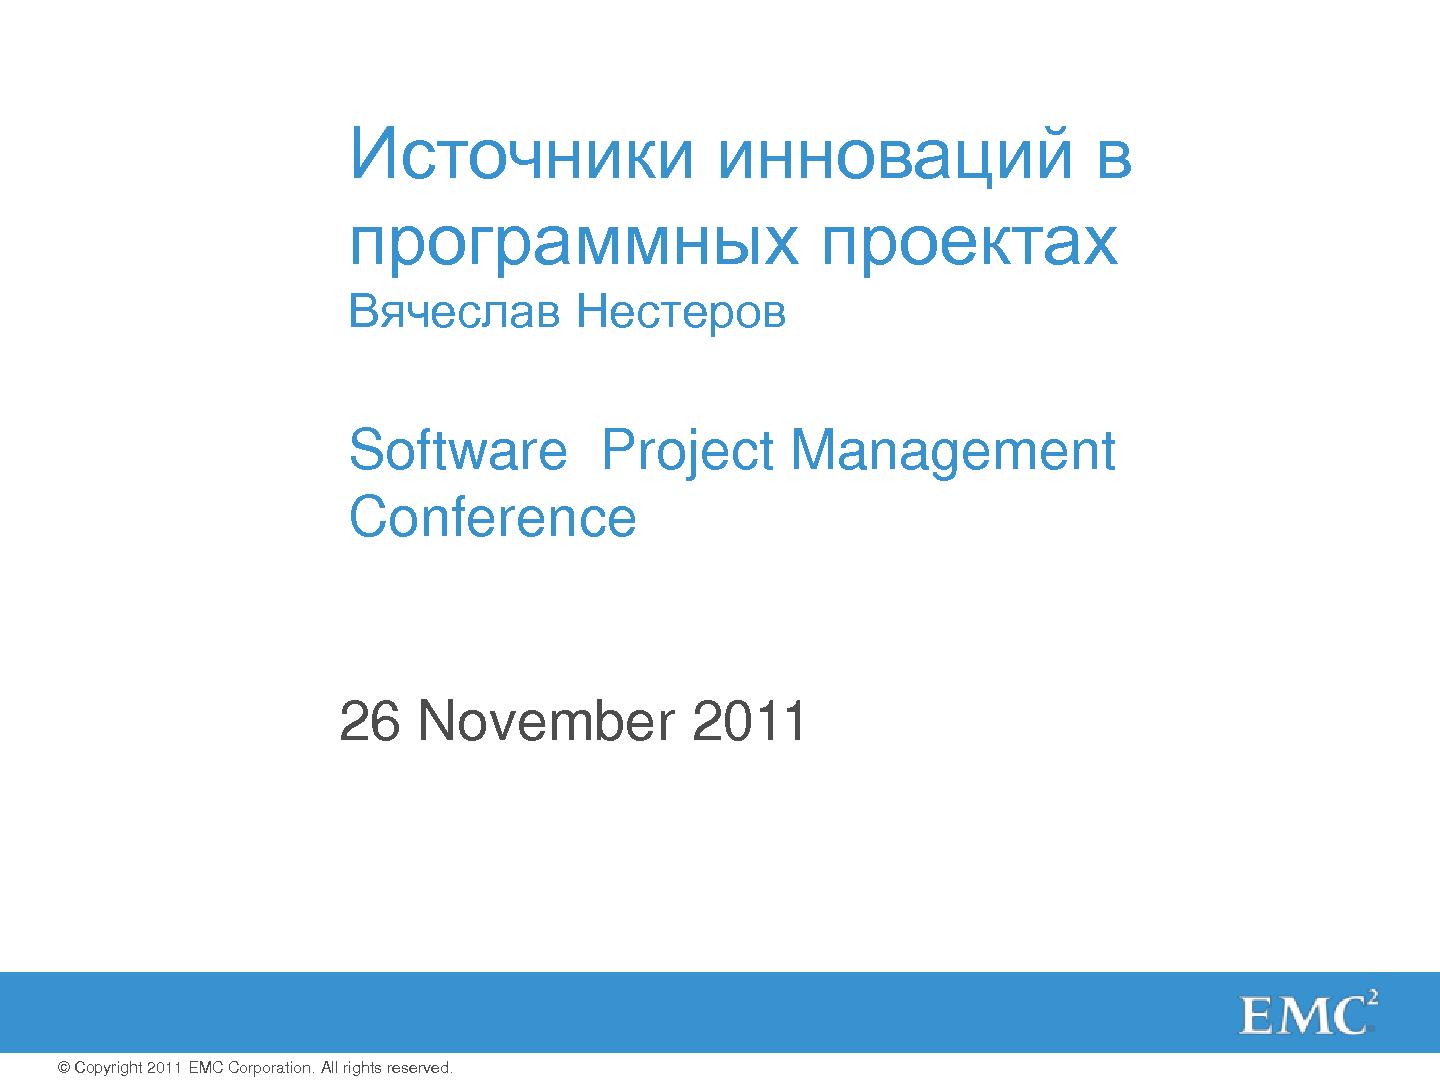 Файл:Источники инноваций в программных проектах (Вячеслав Нестеров, SPMConf-2011).pdf